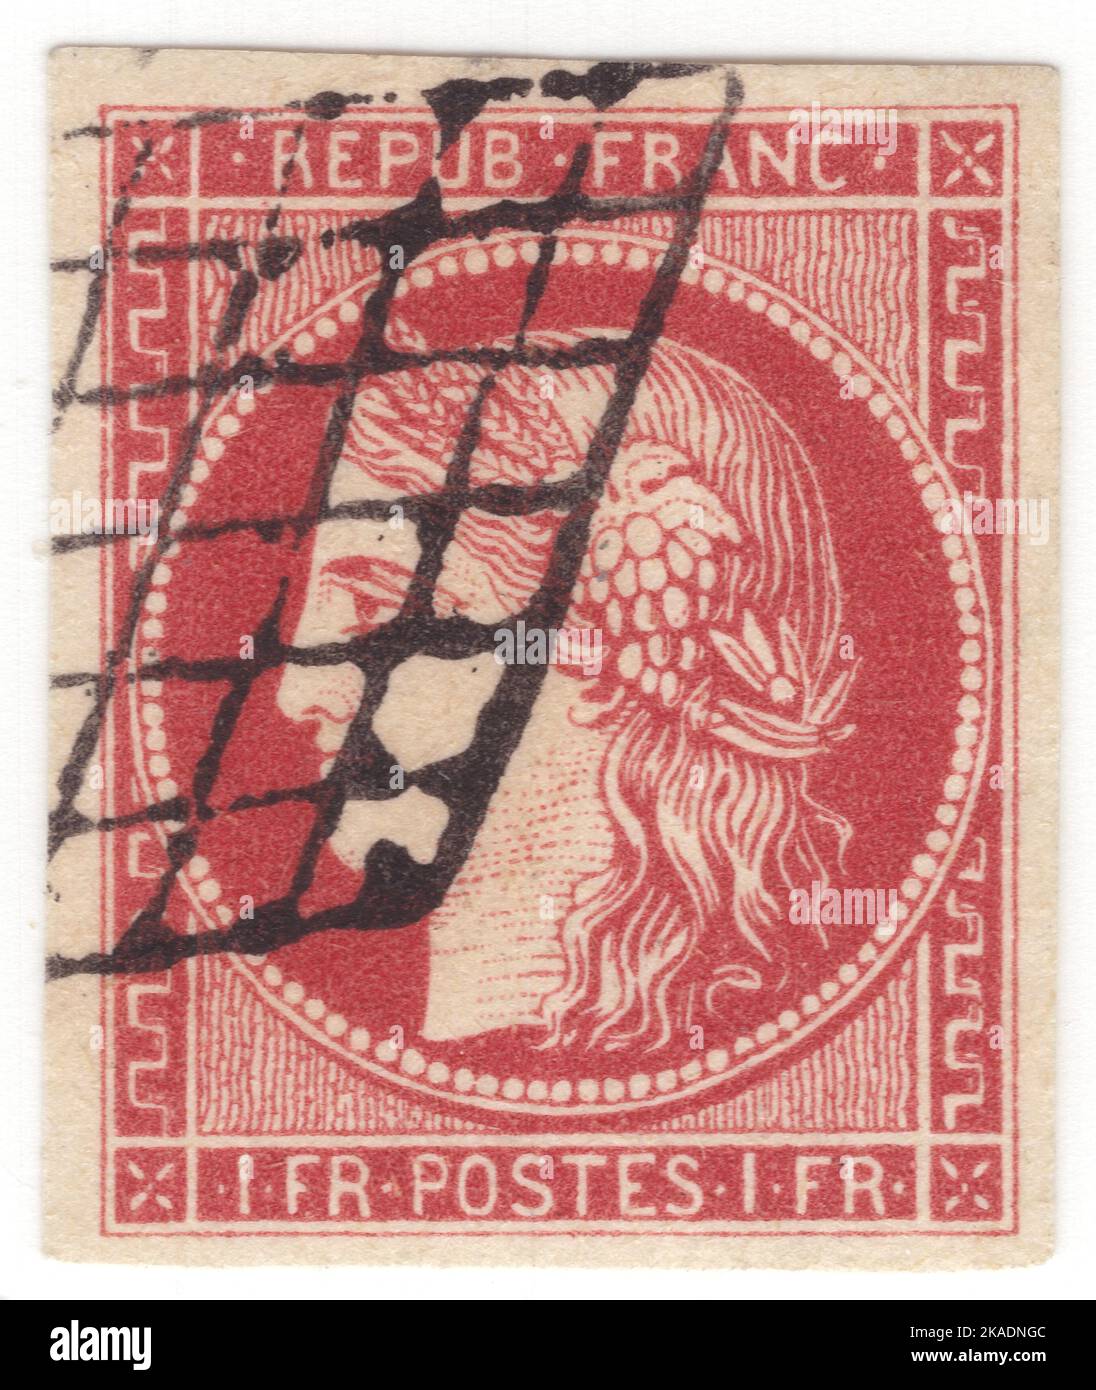 FRANCIA - 1849: Un francobollo da 1 franco di carminio leggero raffigurante Ceres — Dea dell'agricoltura, della fertilità, dei cereali, del raccolto, della maternità, la terra, e coltivò raccolti Foto Stock